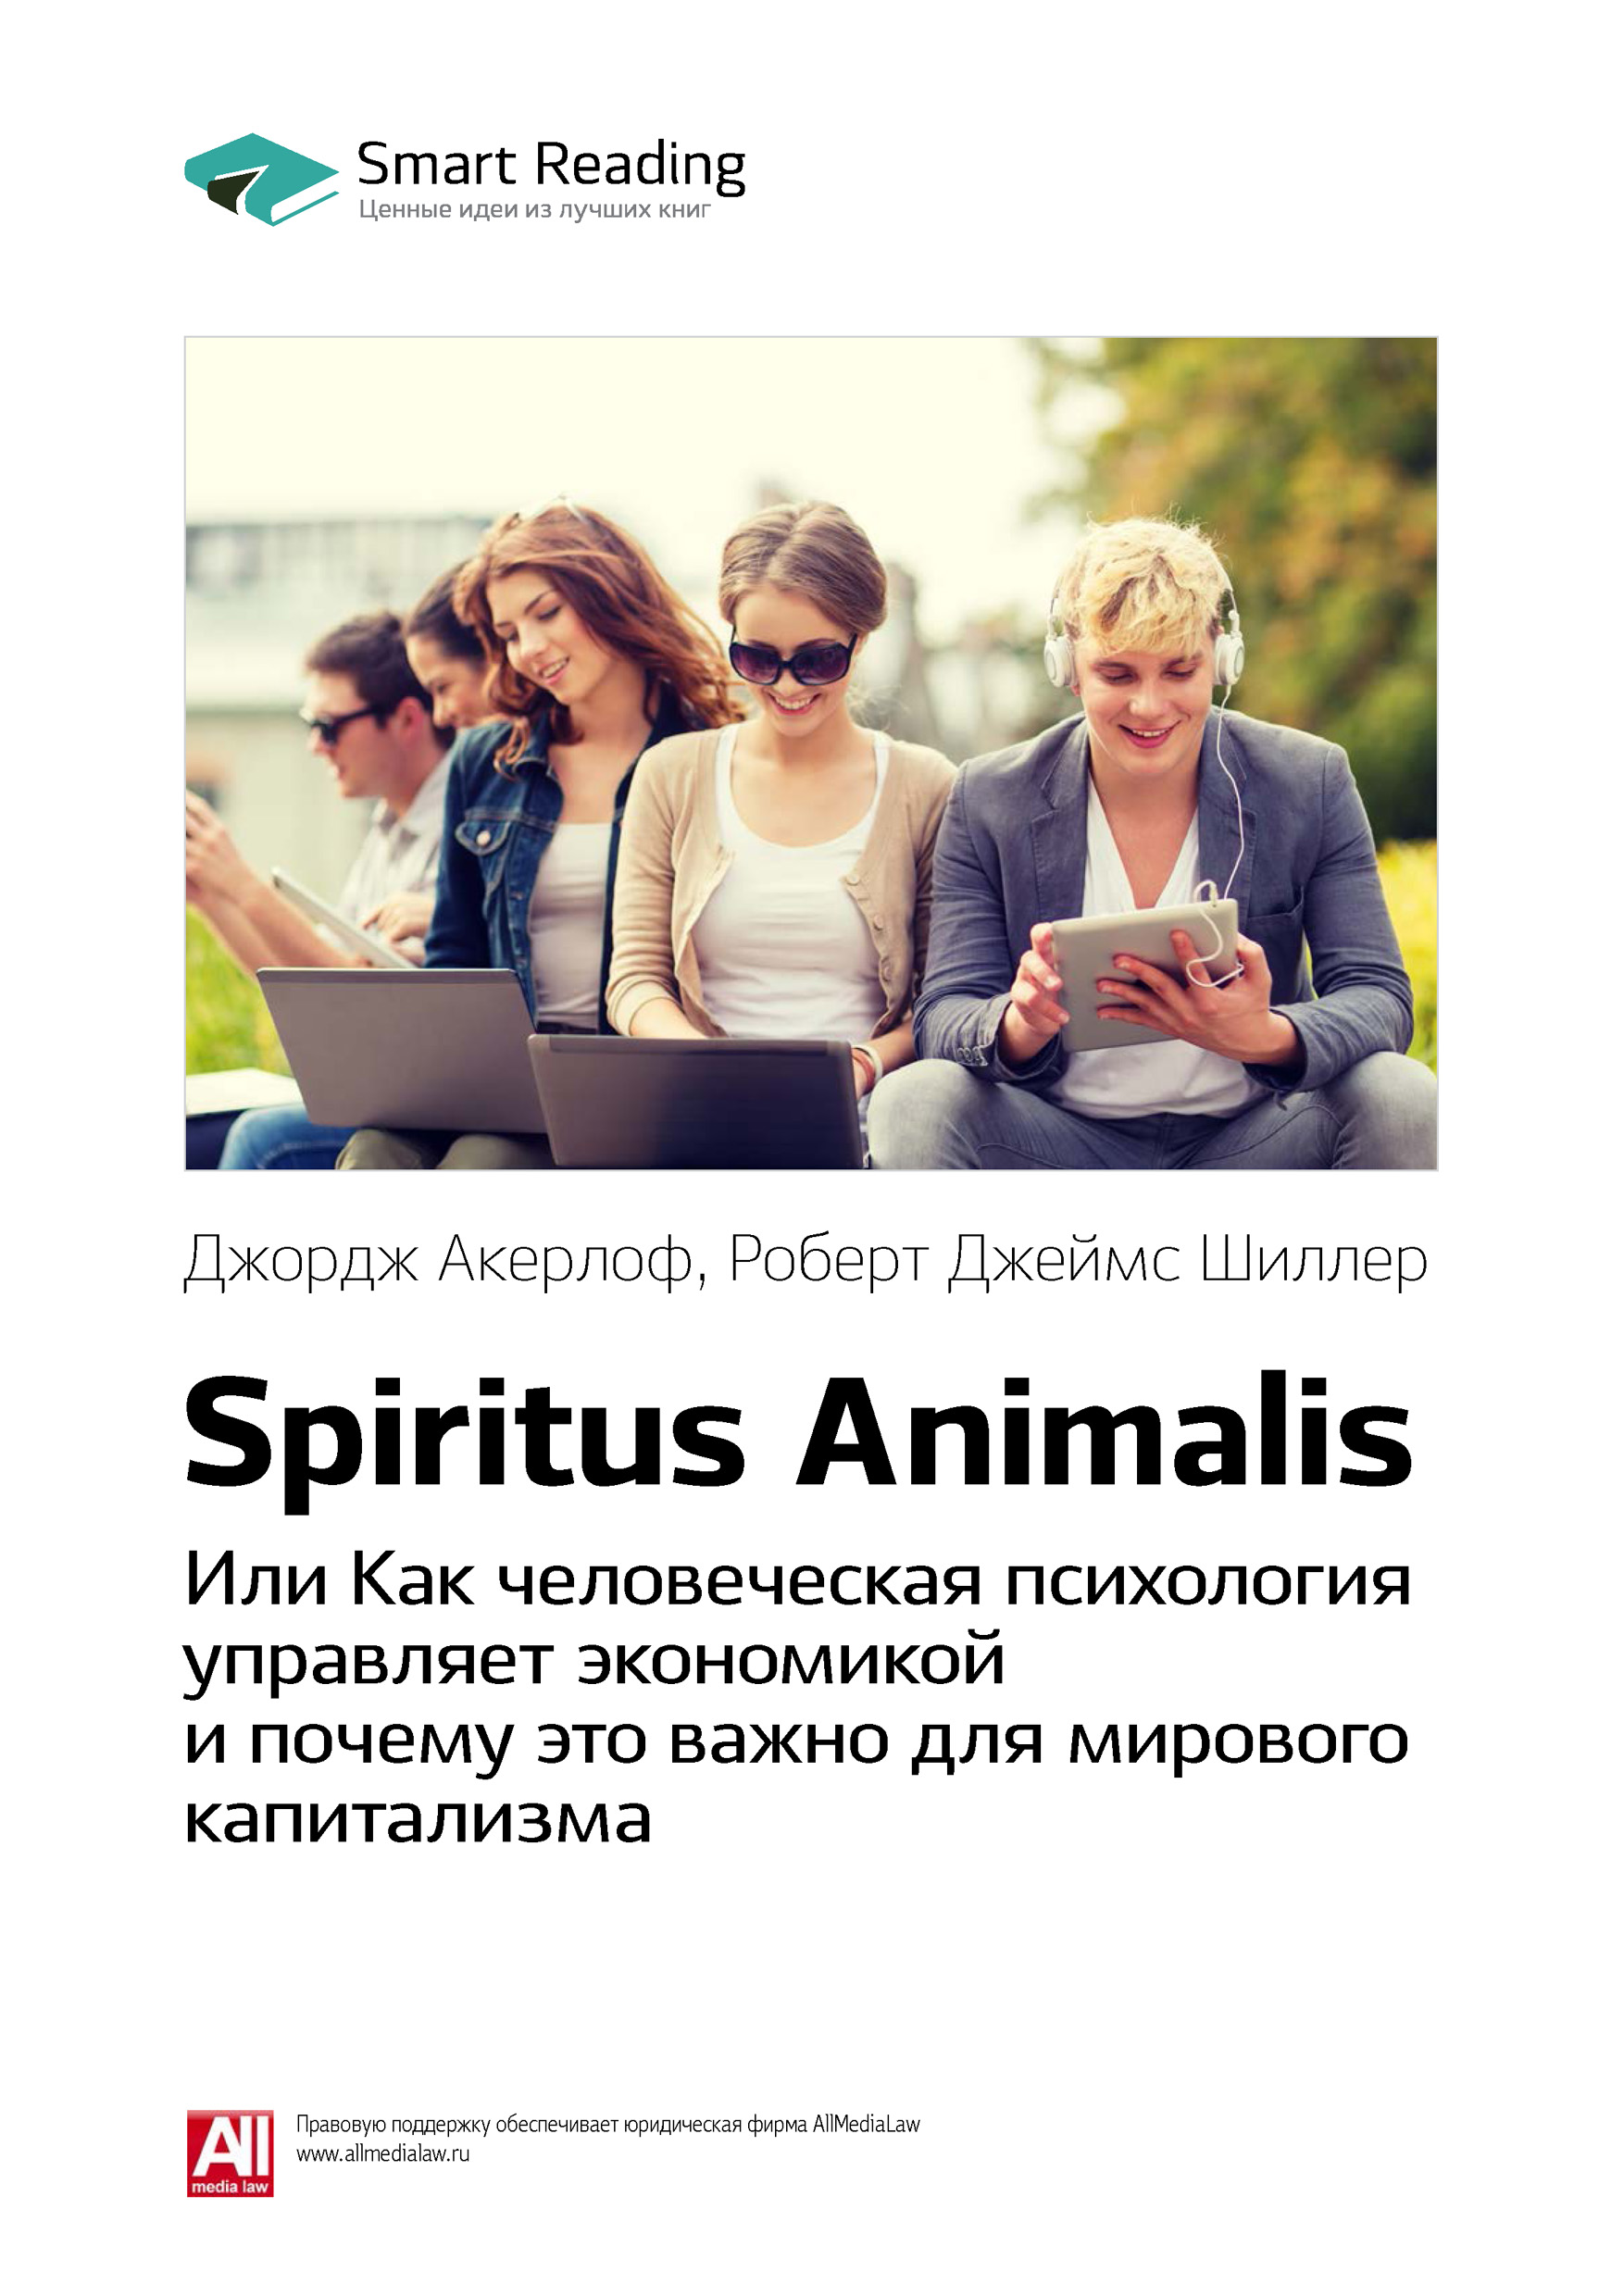 Ключевые идеи книги: Spiritus Animalis, или Как человеческая психология  управляет экономикой и почему это важно для мирового капитализма. Джордж  Акерлоф, Роберт Джеймс Шиллер, Smart Reading – скачать книгу fb2, epub, pdf  на